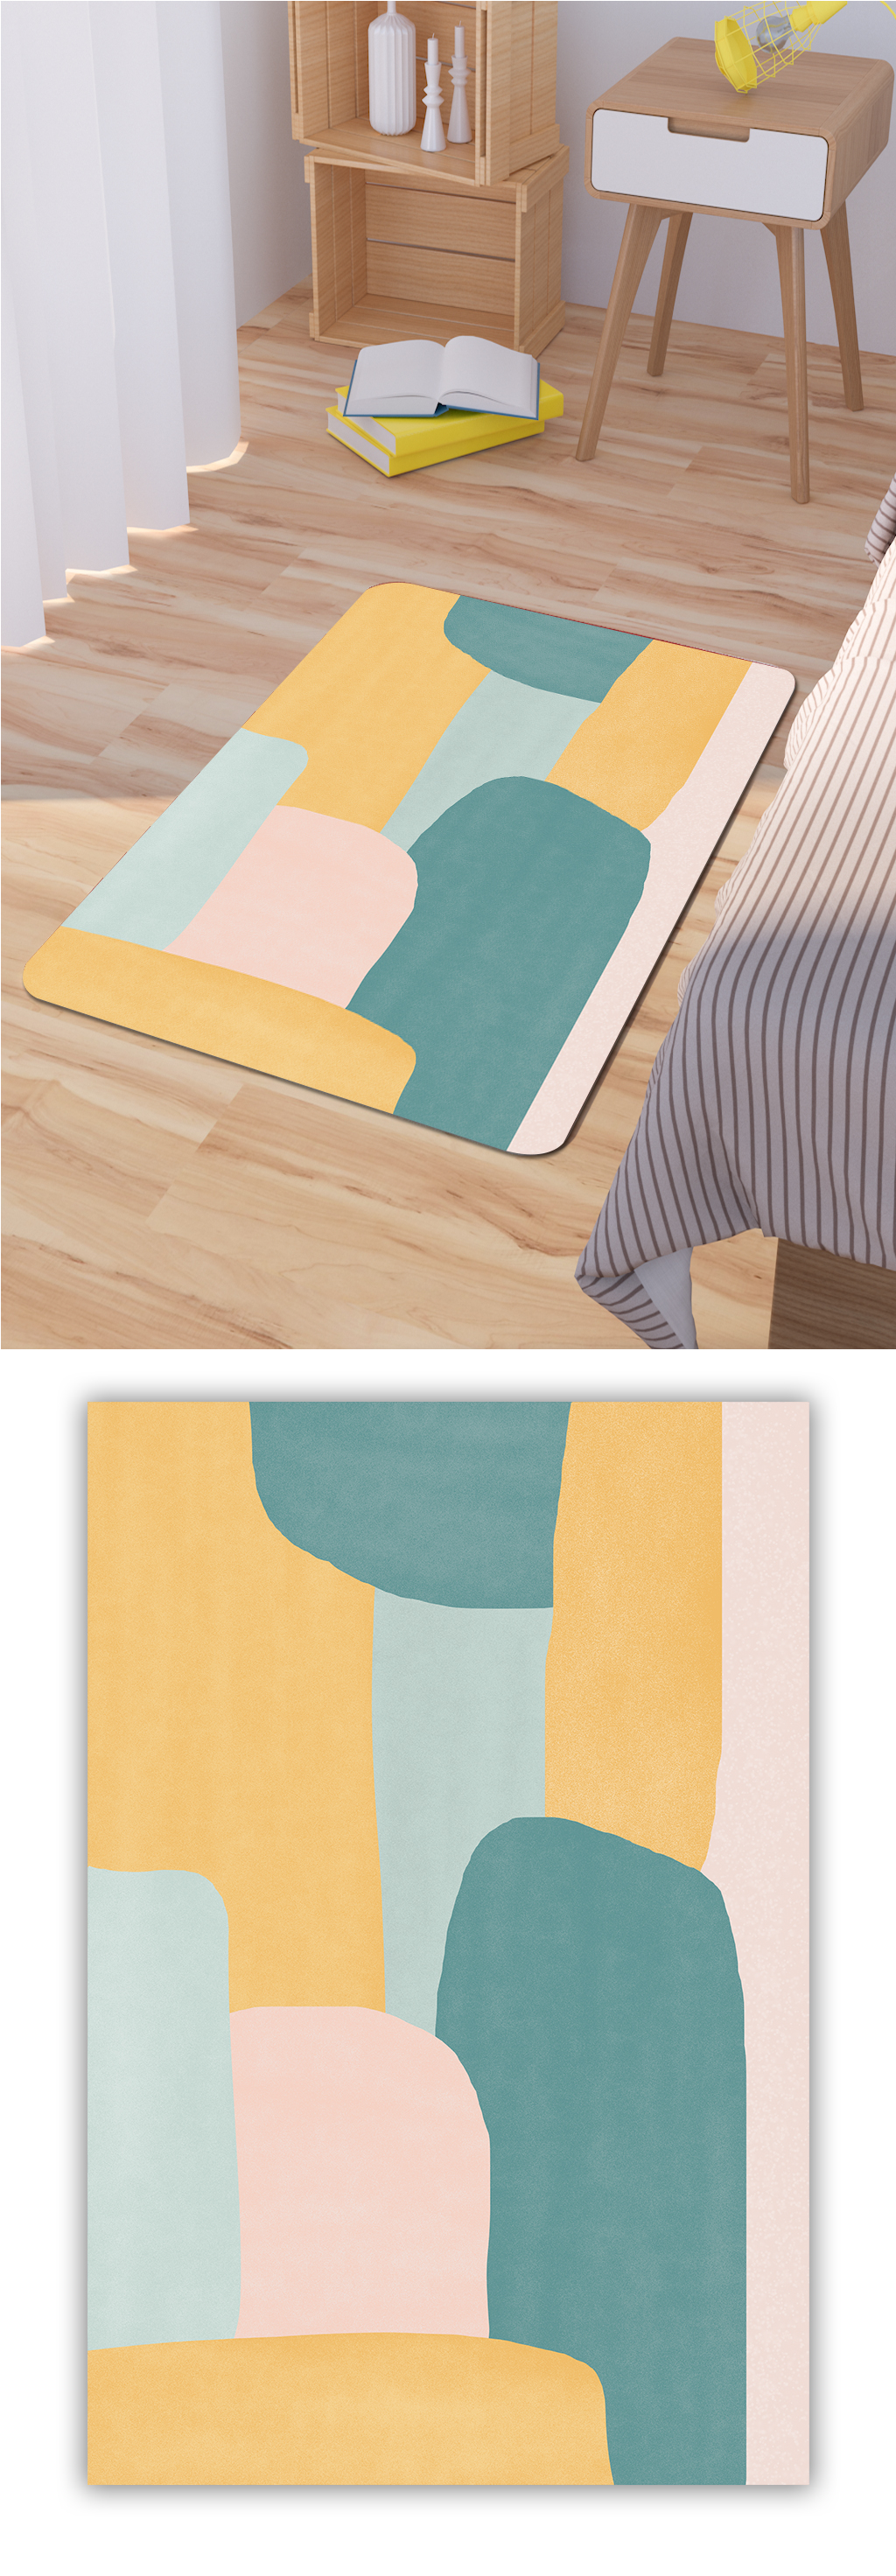 床边地毯拼接色块图案